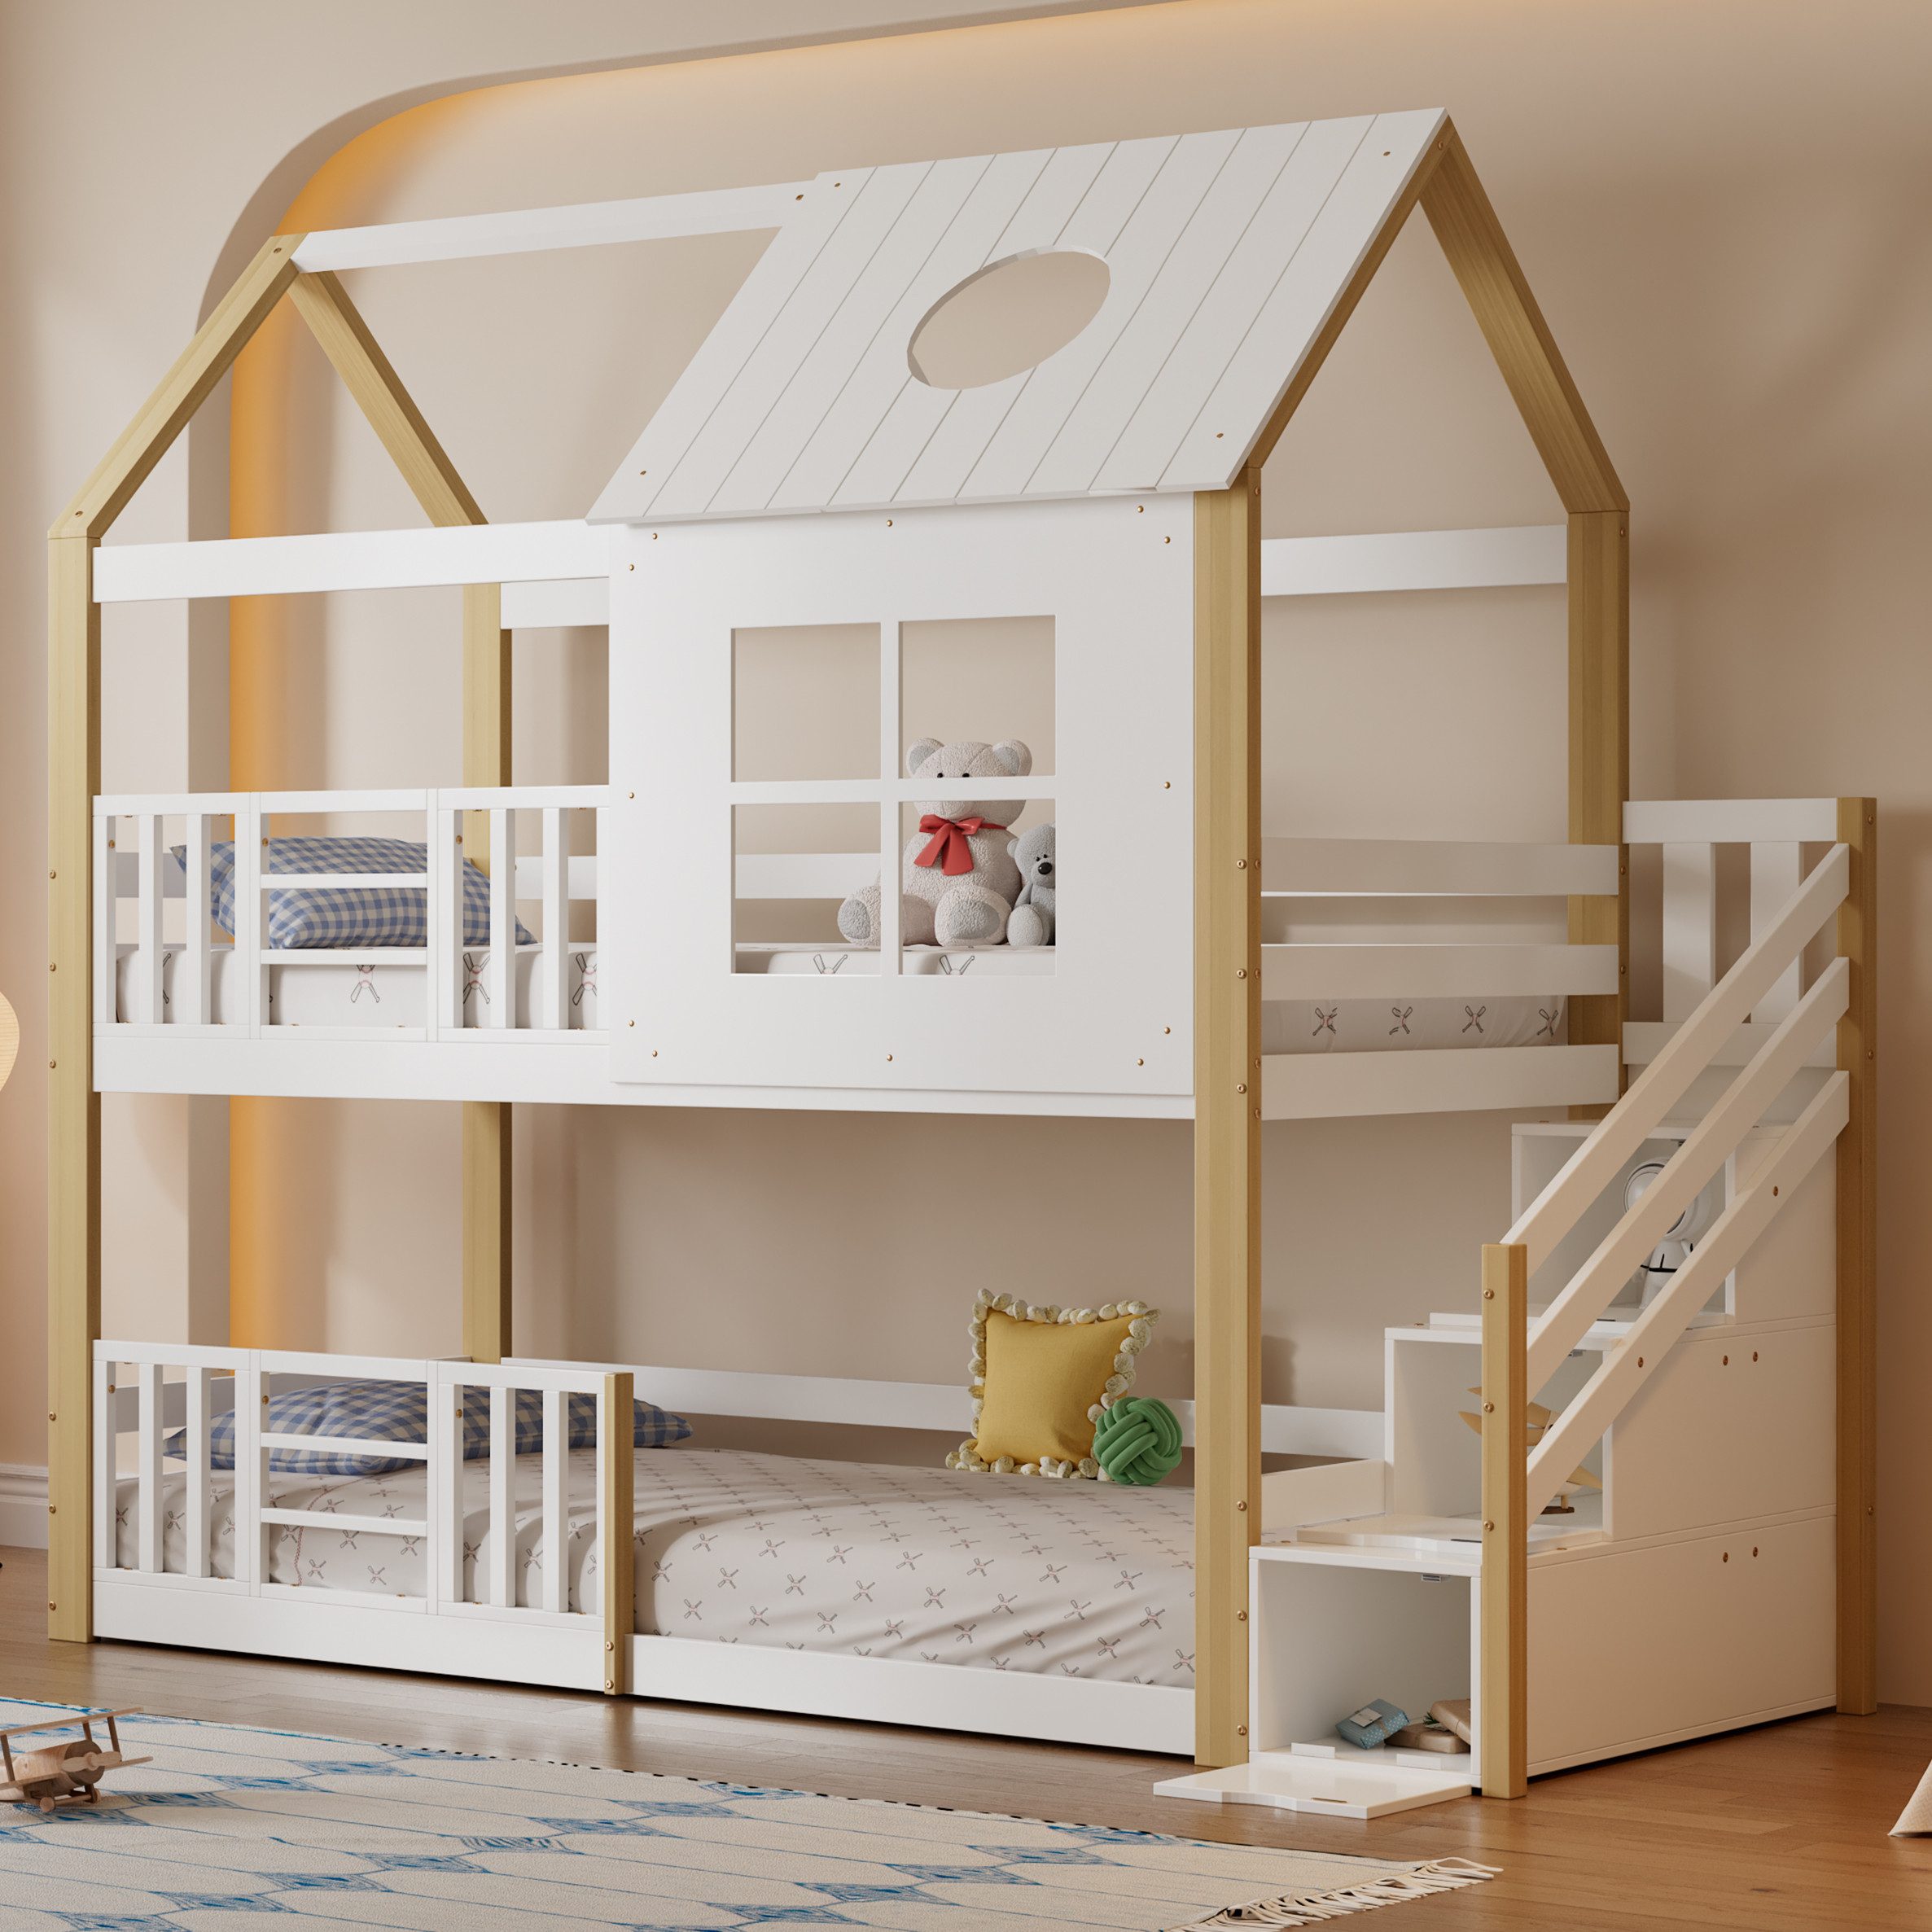 WISHDOR Etagenbett Holzbett mit Fenster und Dach (mit Aufbewahrungstreppe, Hausbett, Kinderbett, mit Fallschutzgitter), ohne Matratze